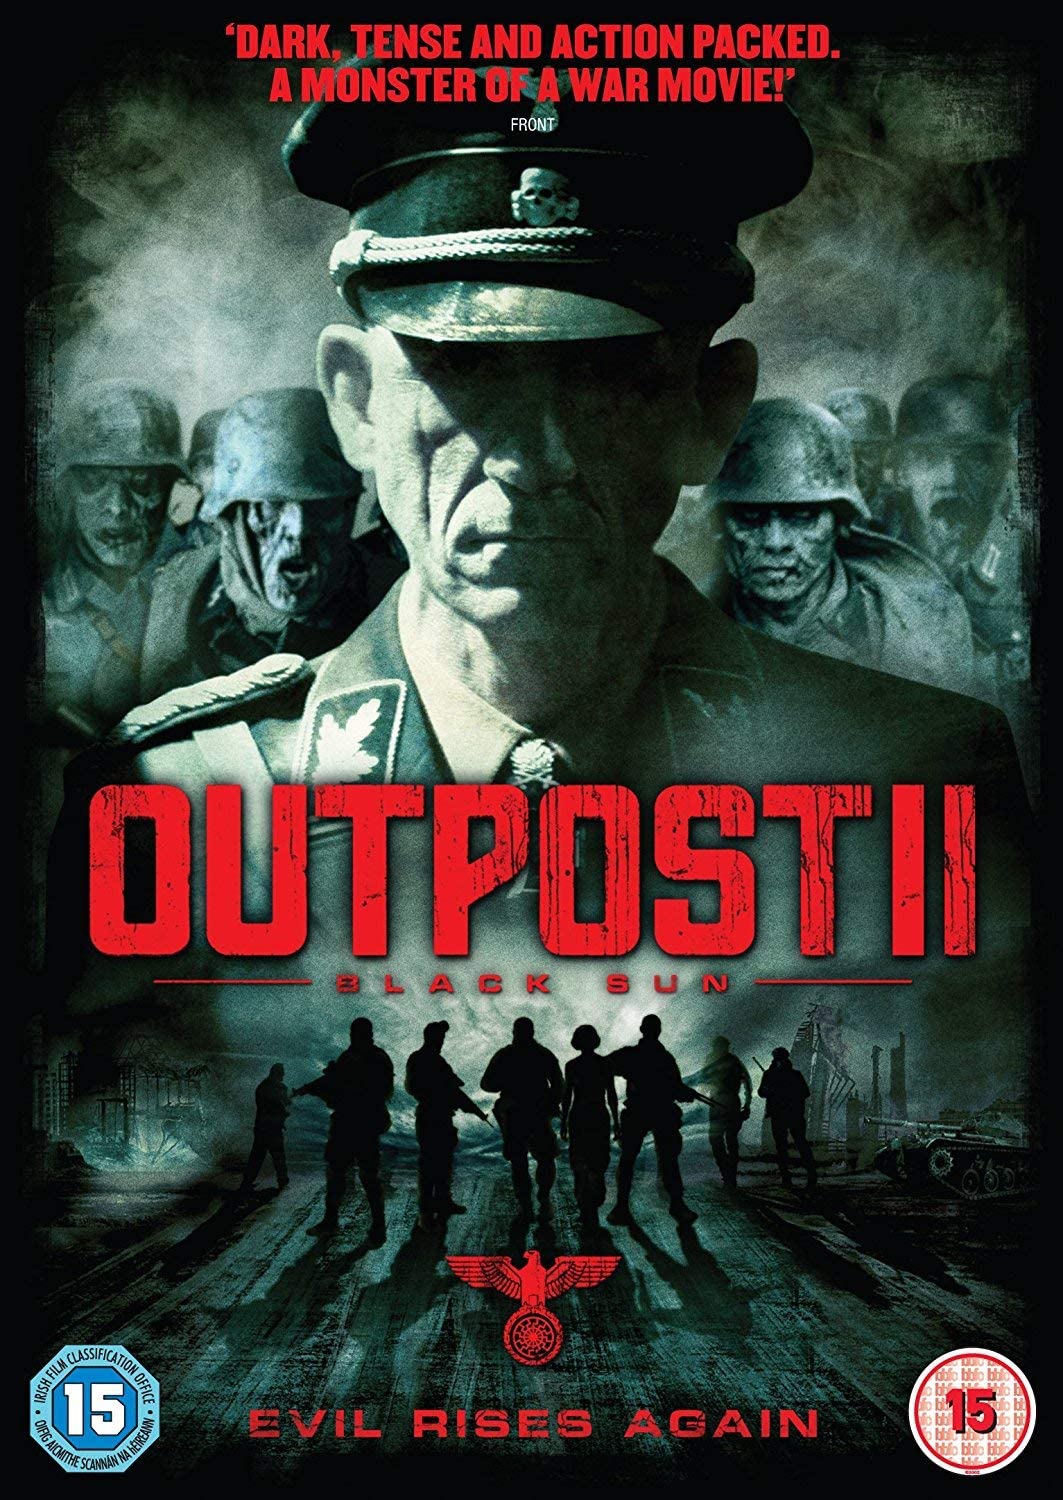 Outpost II: Black Sun - Horror [DVD]